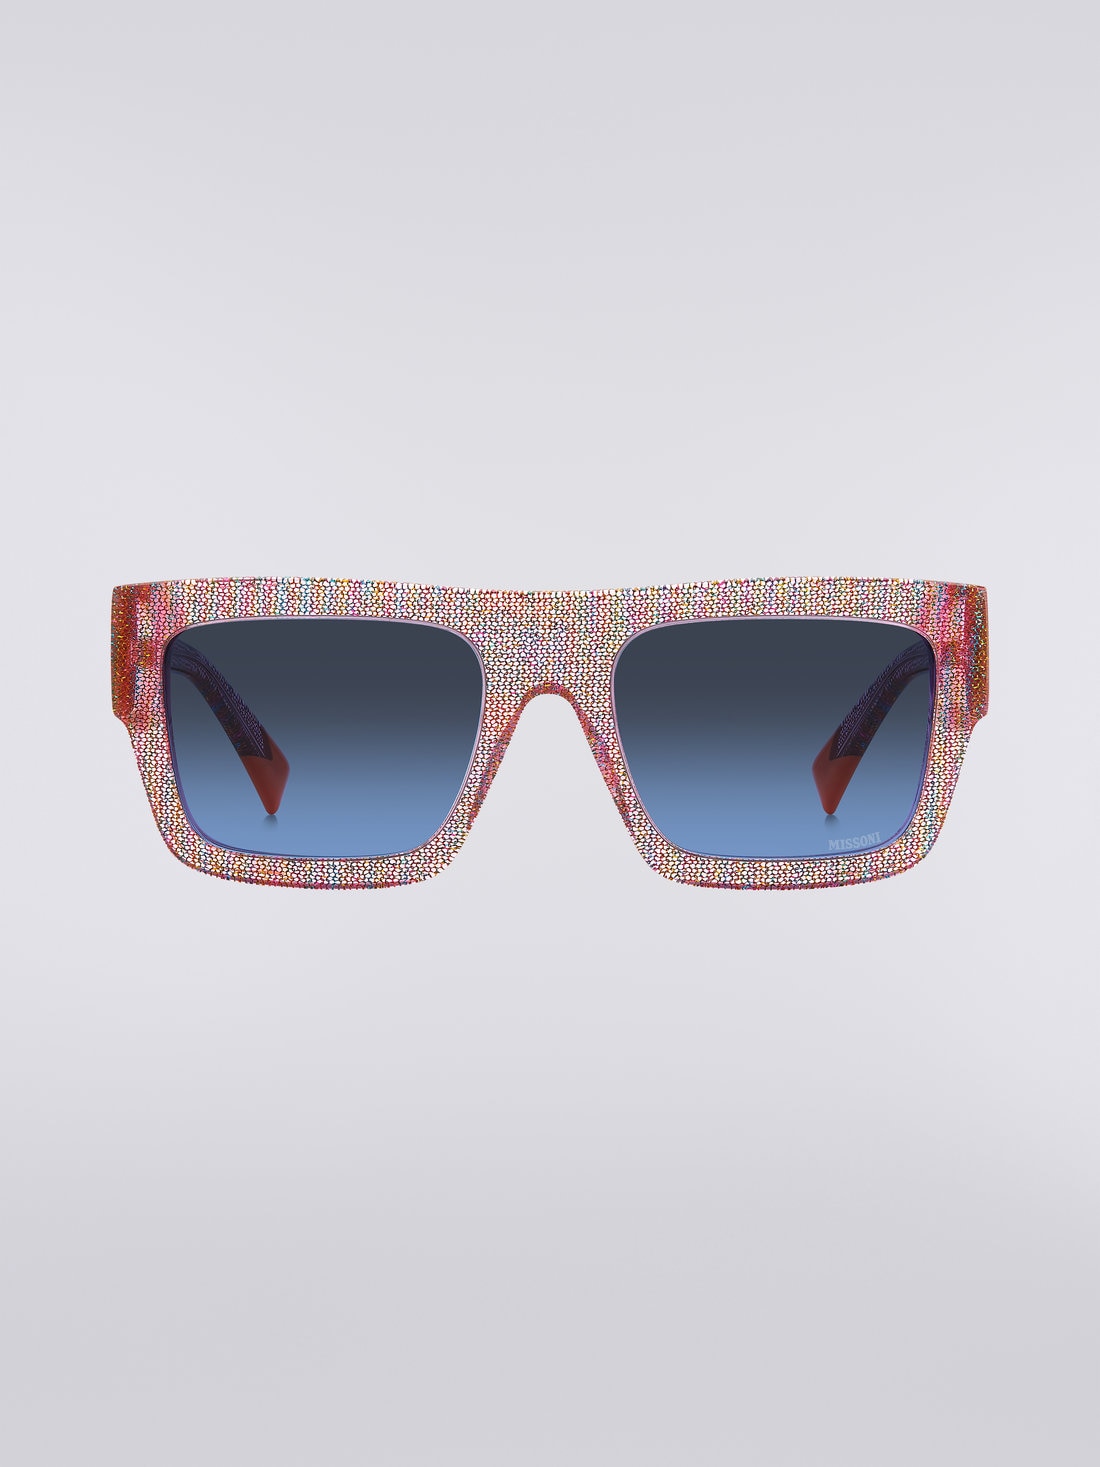 Missoni Dna Acetate Sunglasses, Multicoloured  - 8051575840289 - 0